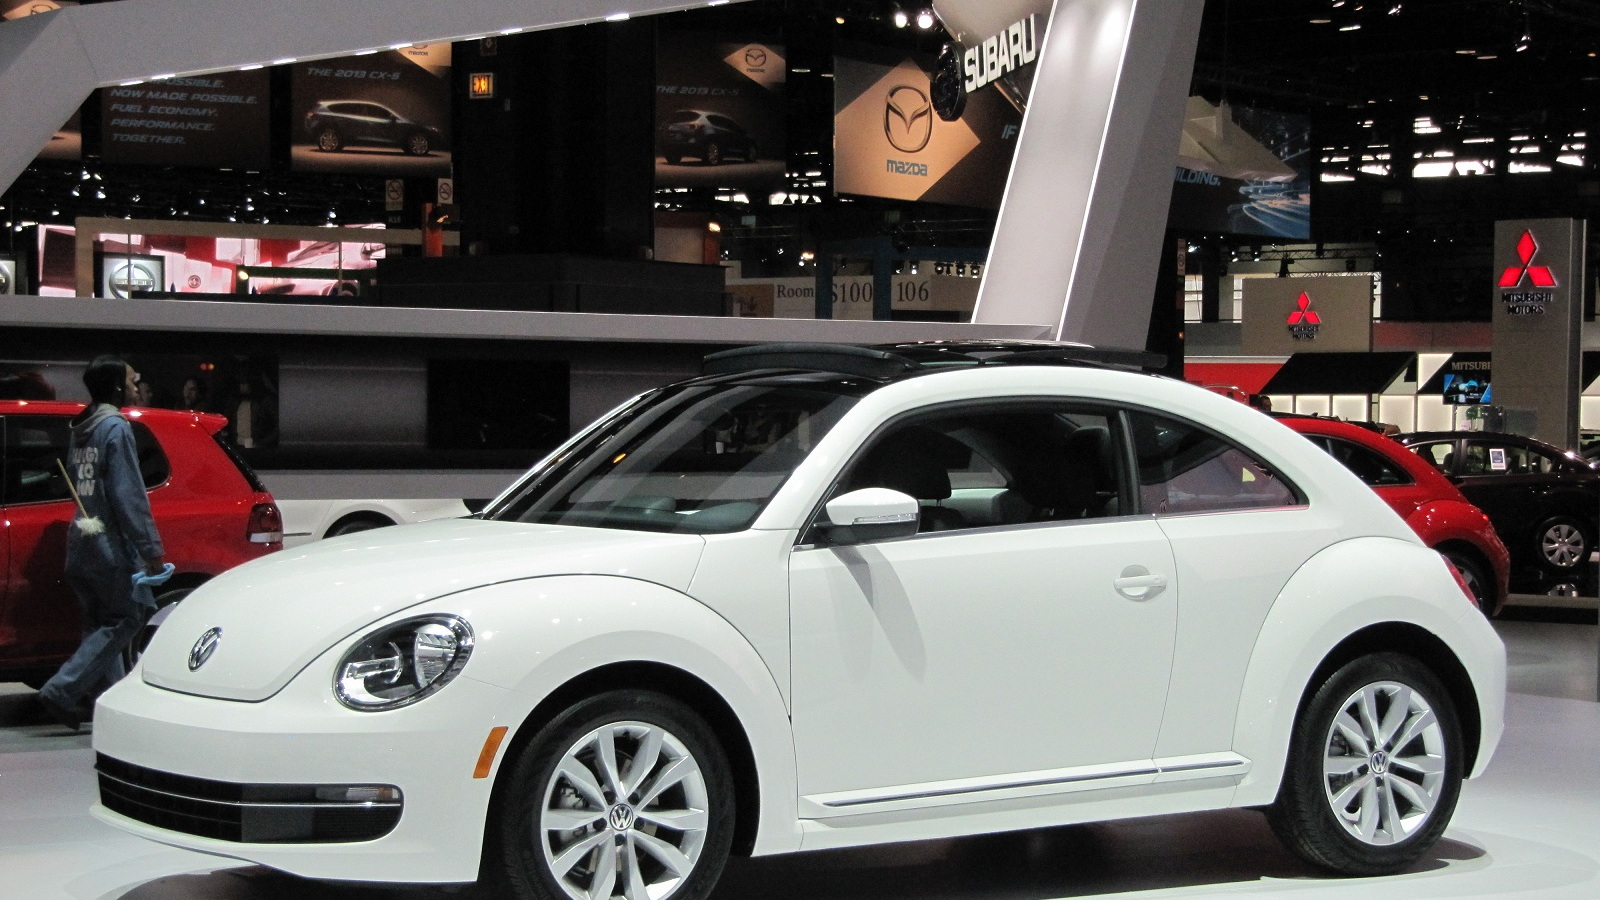 2013 Volkswagen Beetle TDI, Chicago Auto Show, Feb 2012